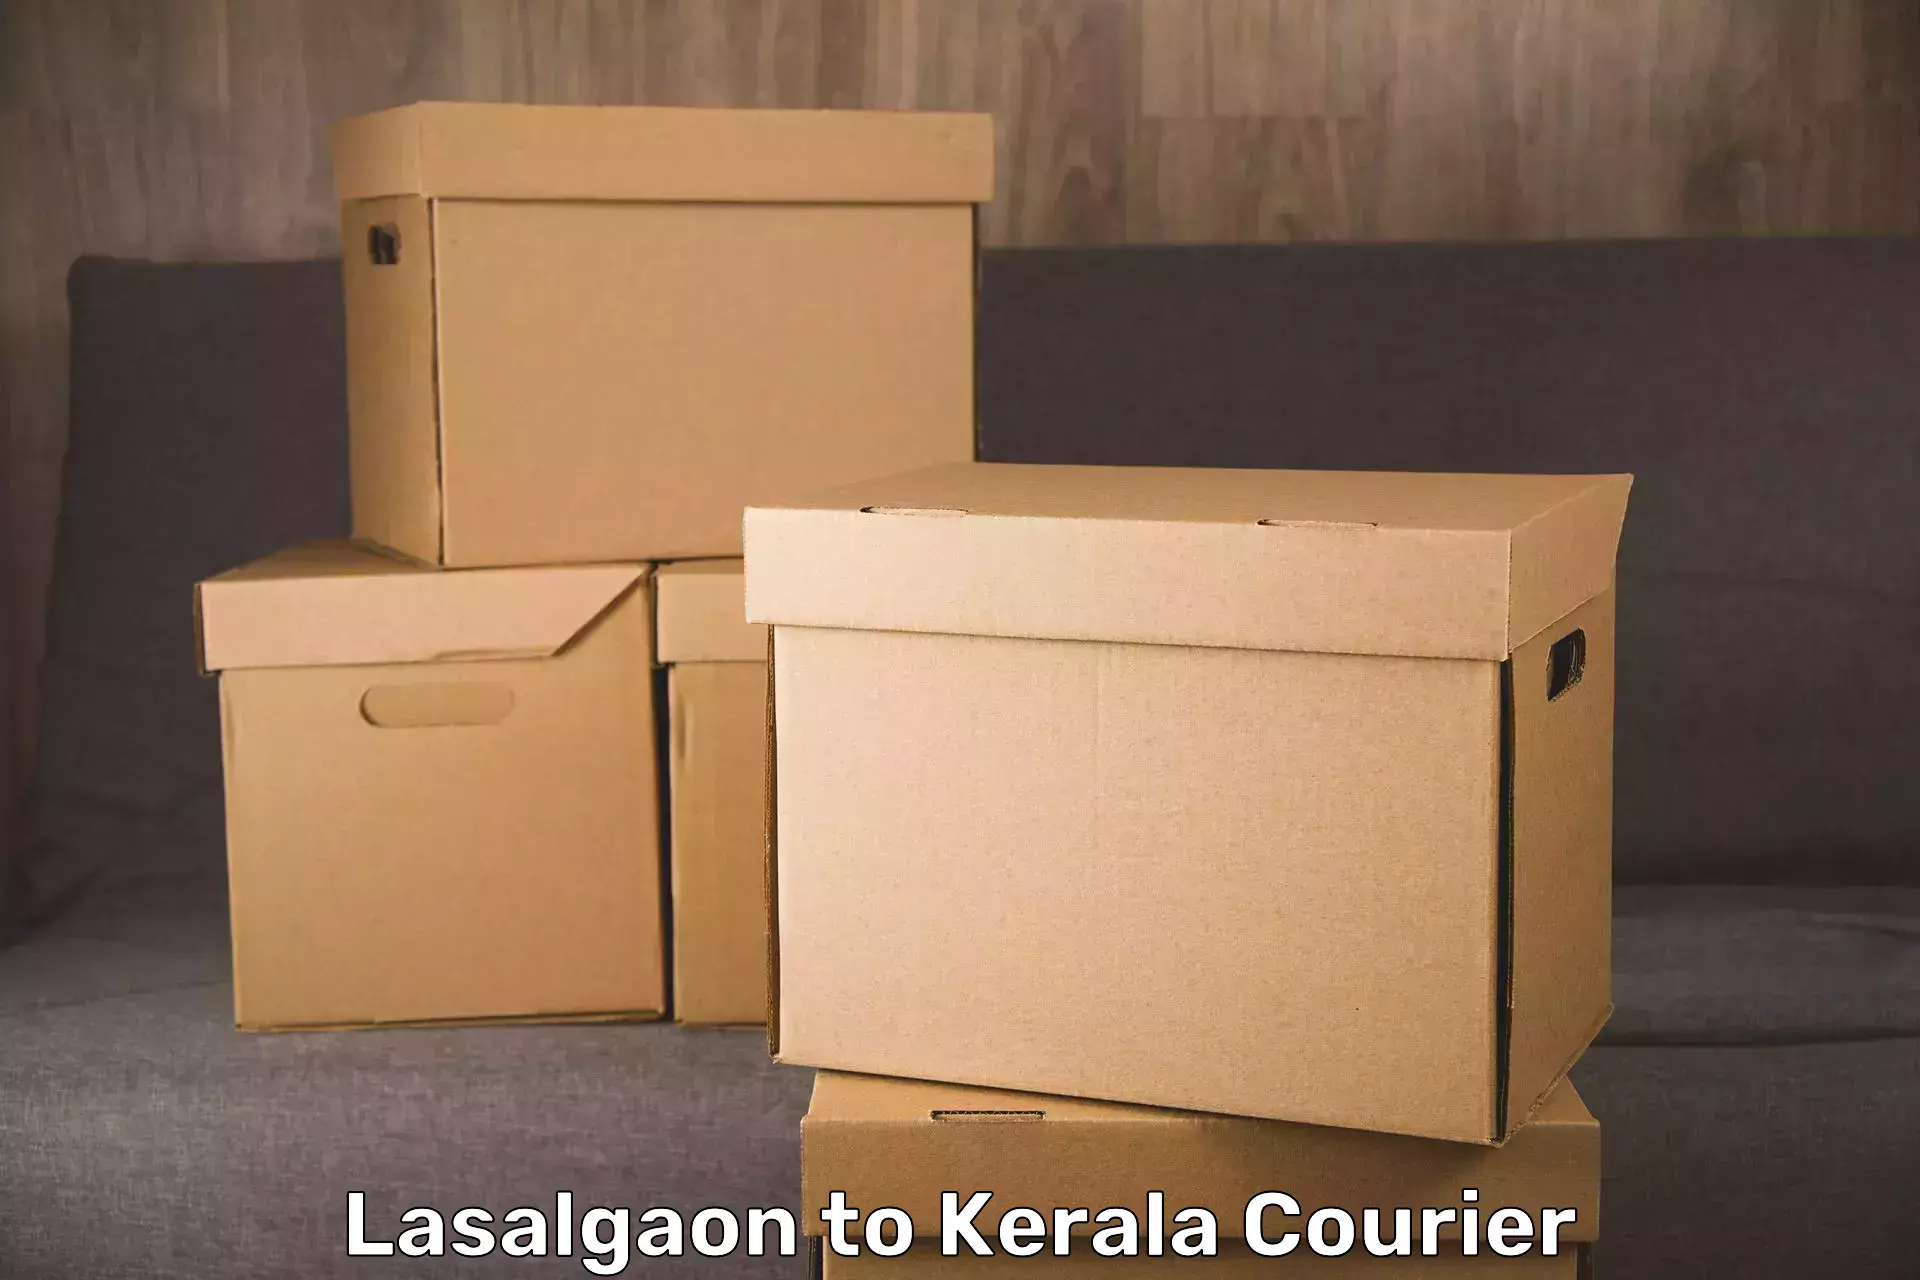 Luggage transport service in Lasalgaon to Kanhangad